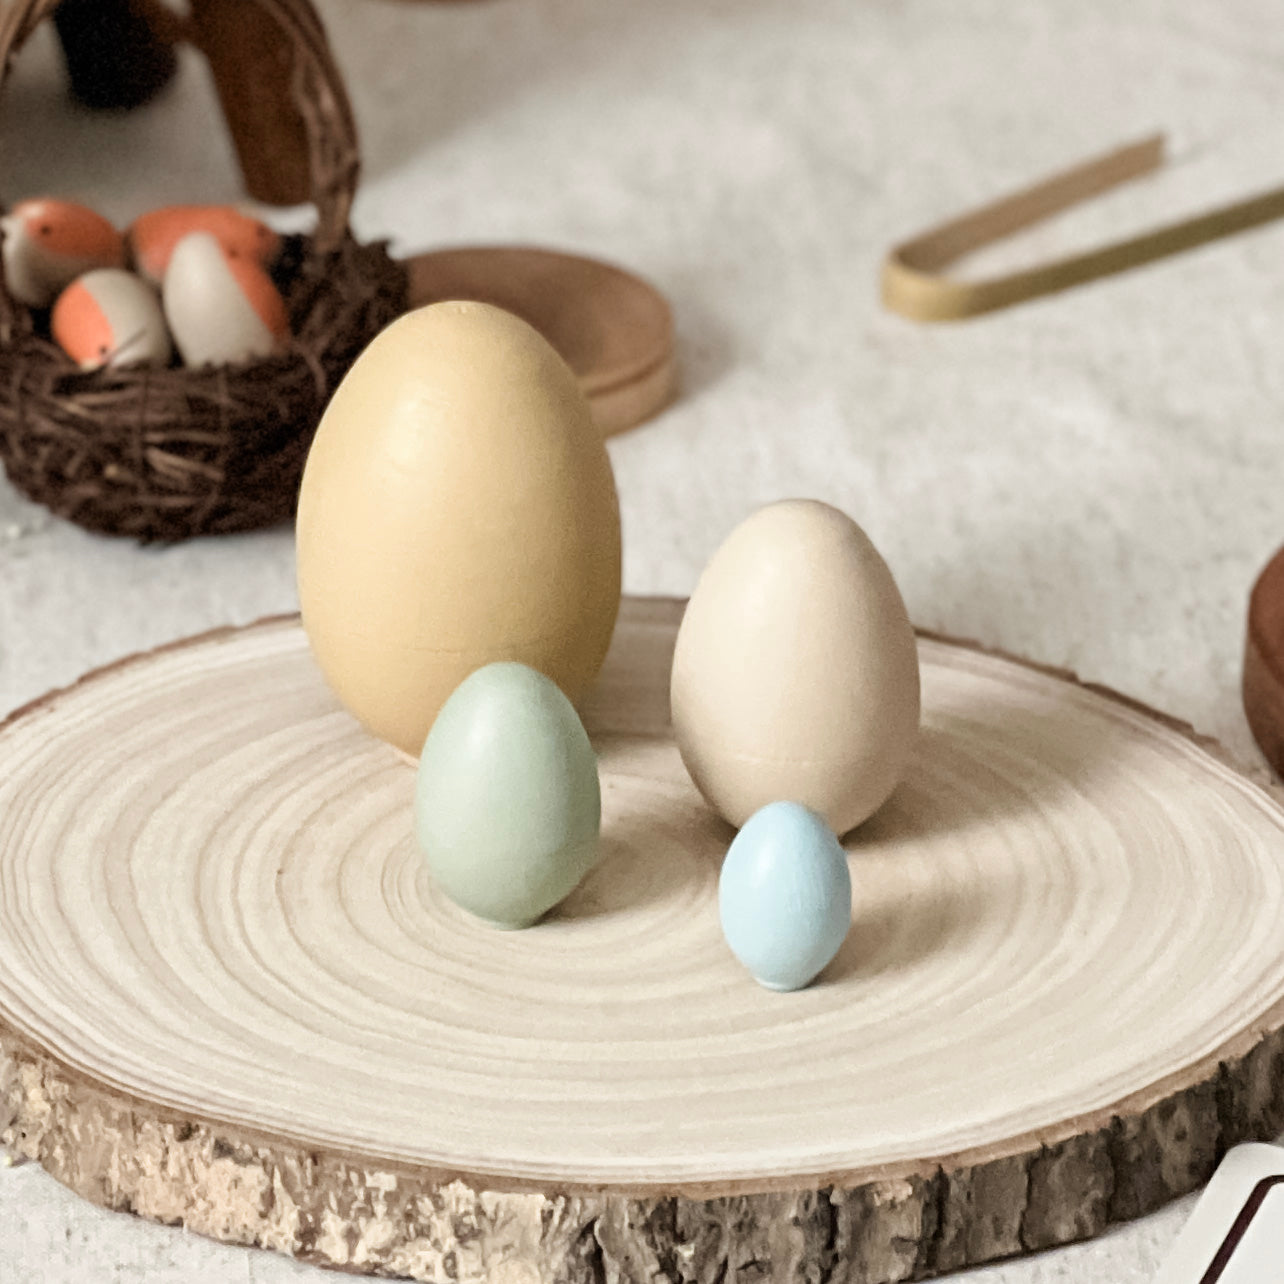 4 Wooden Nesting Eggs